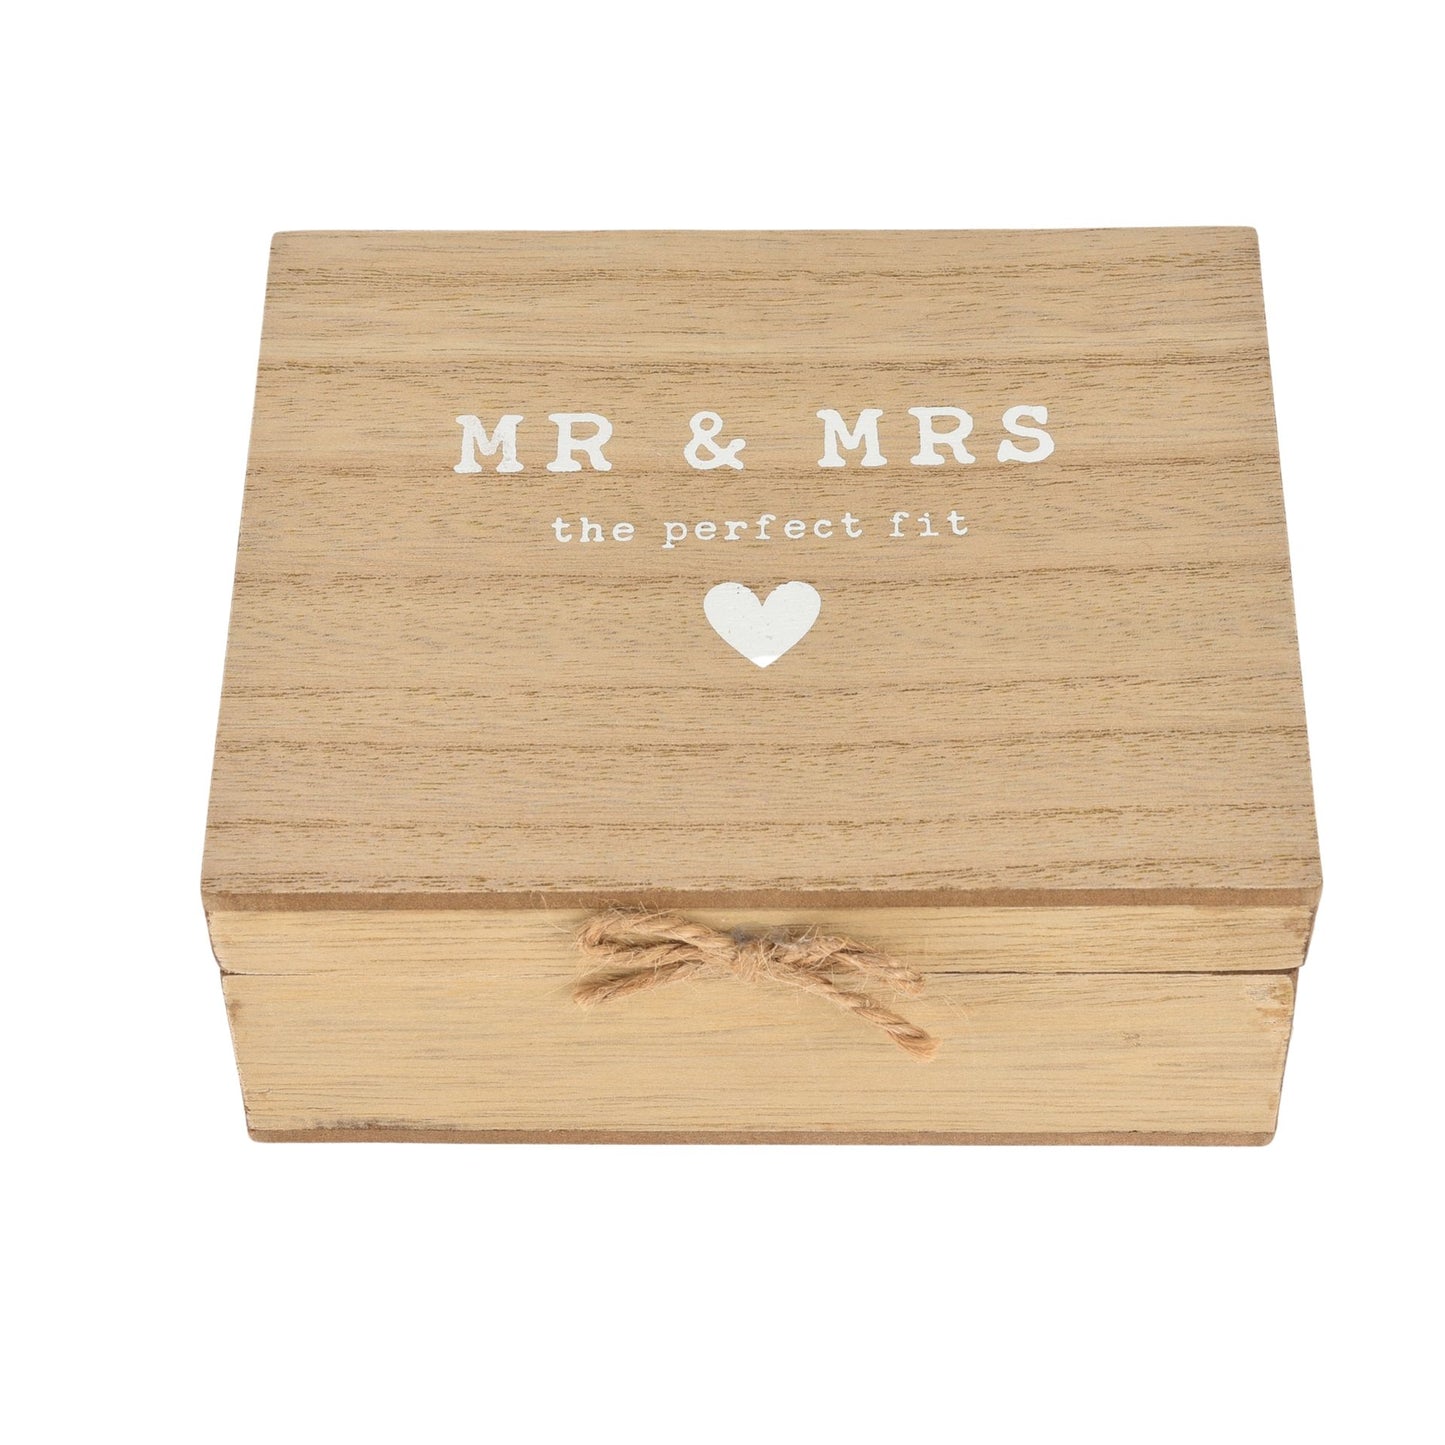 “Mr” & “Mrs” Pair Of Keyrings In Box